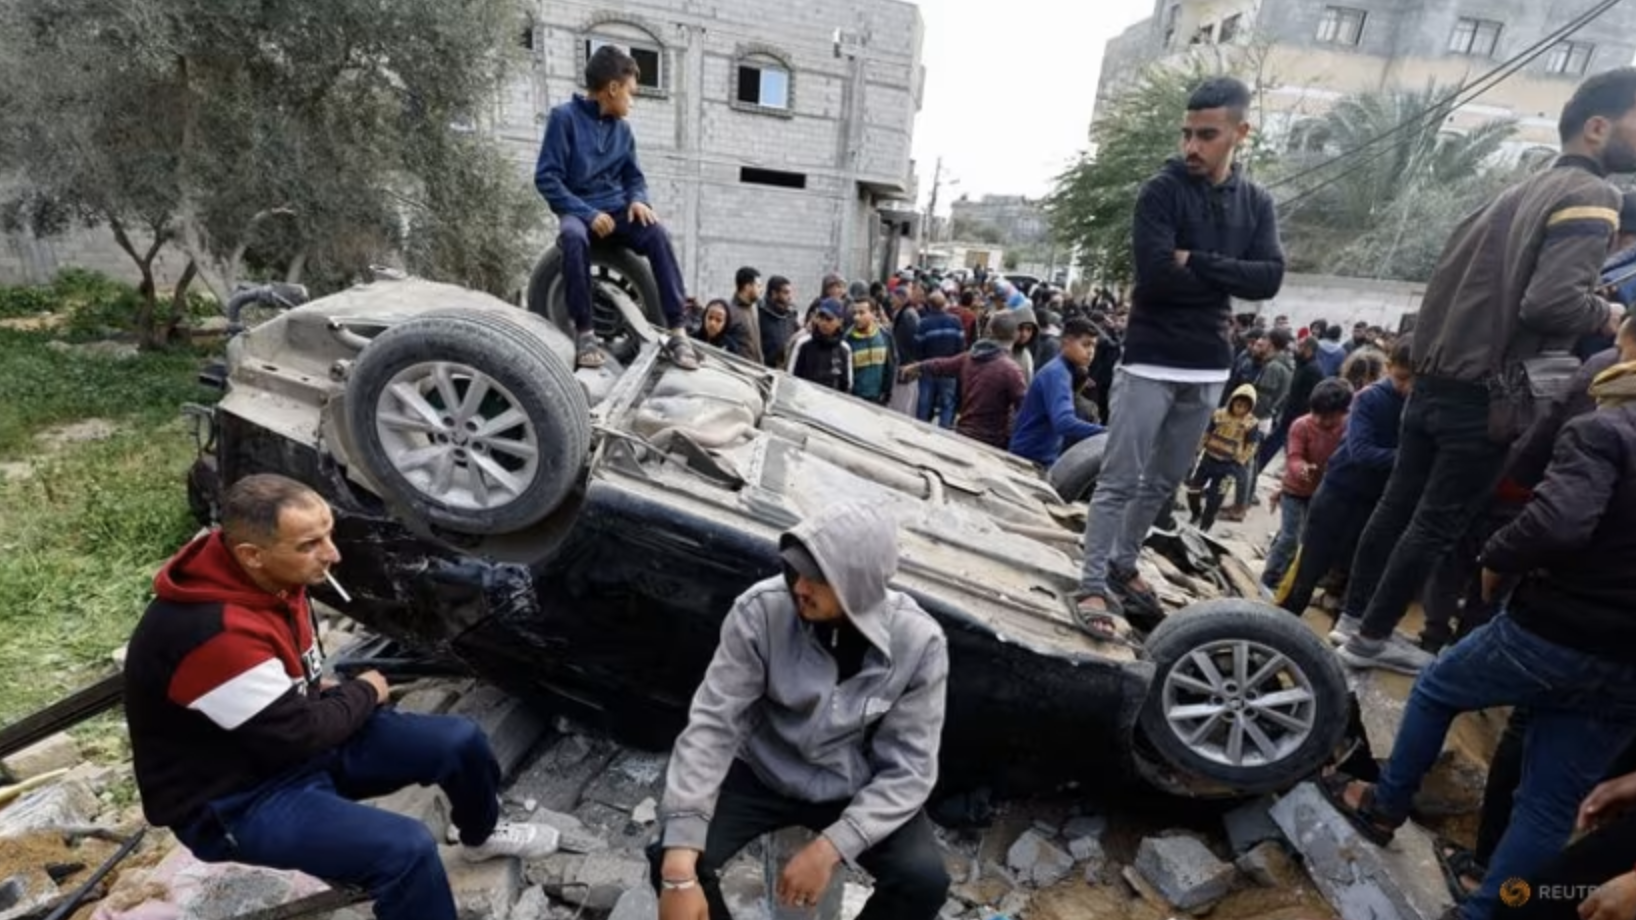 Xung đột Israel - Hamas ở Gaza chưa có hồi kết. (Ảnh: Reuters)